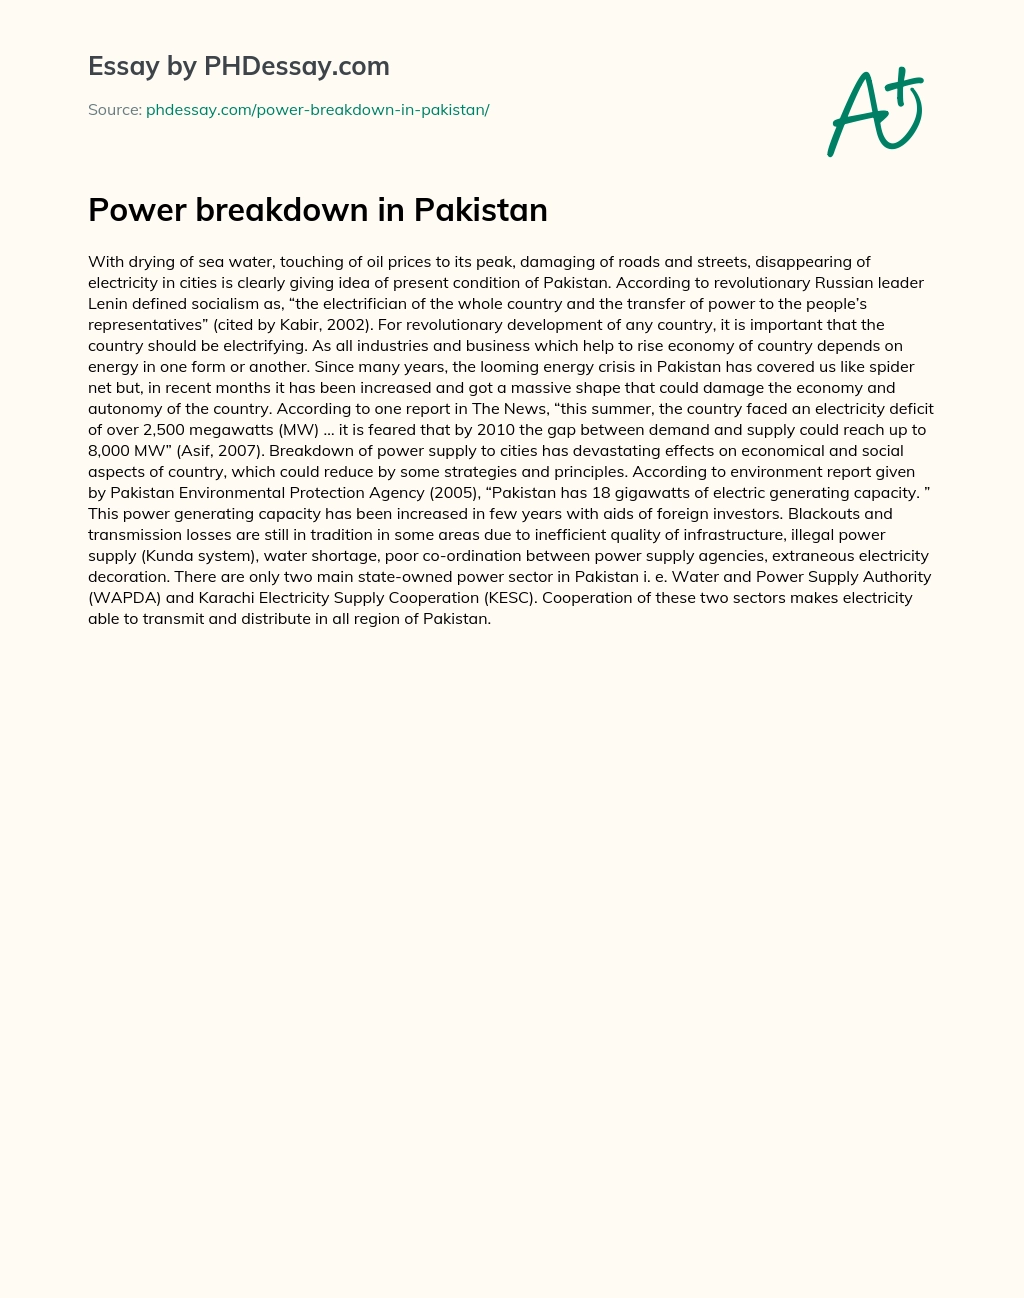 Power breakdown in Pakistan essay